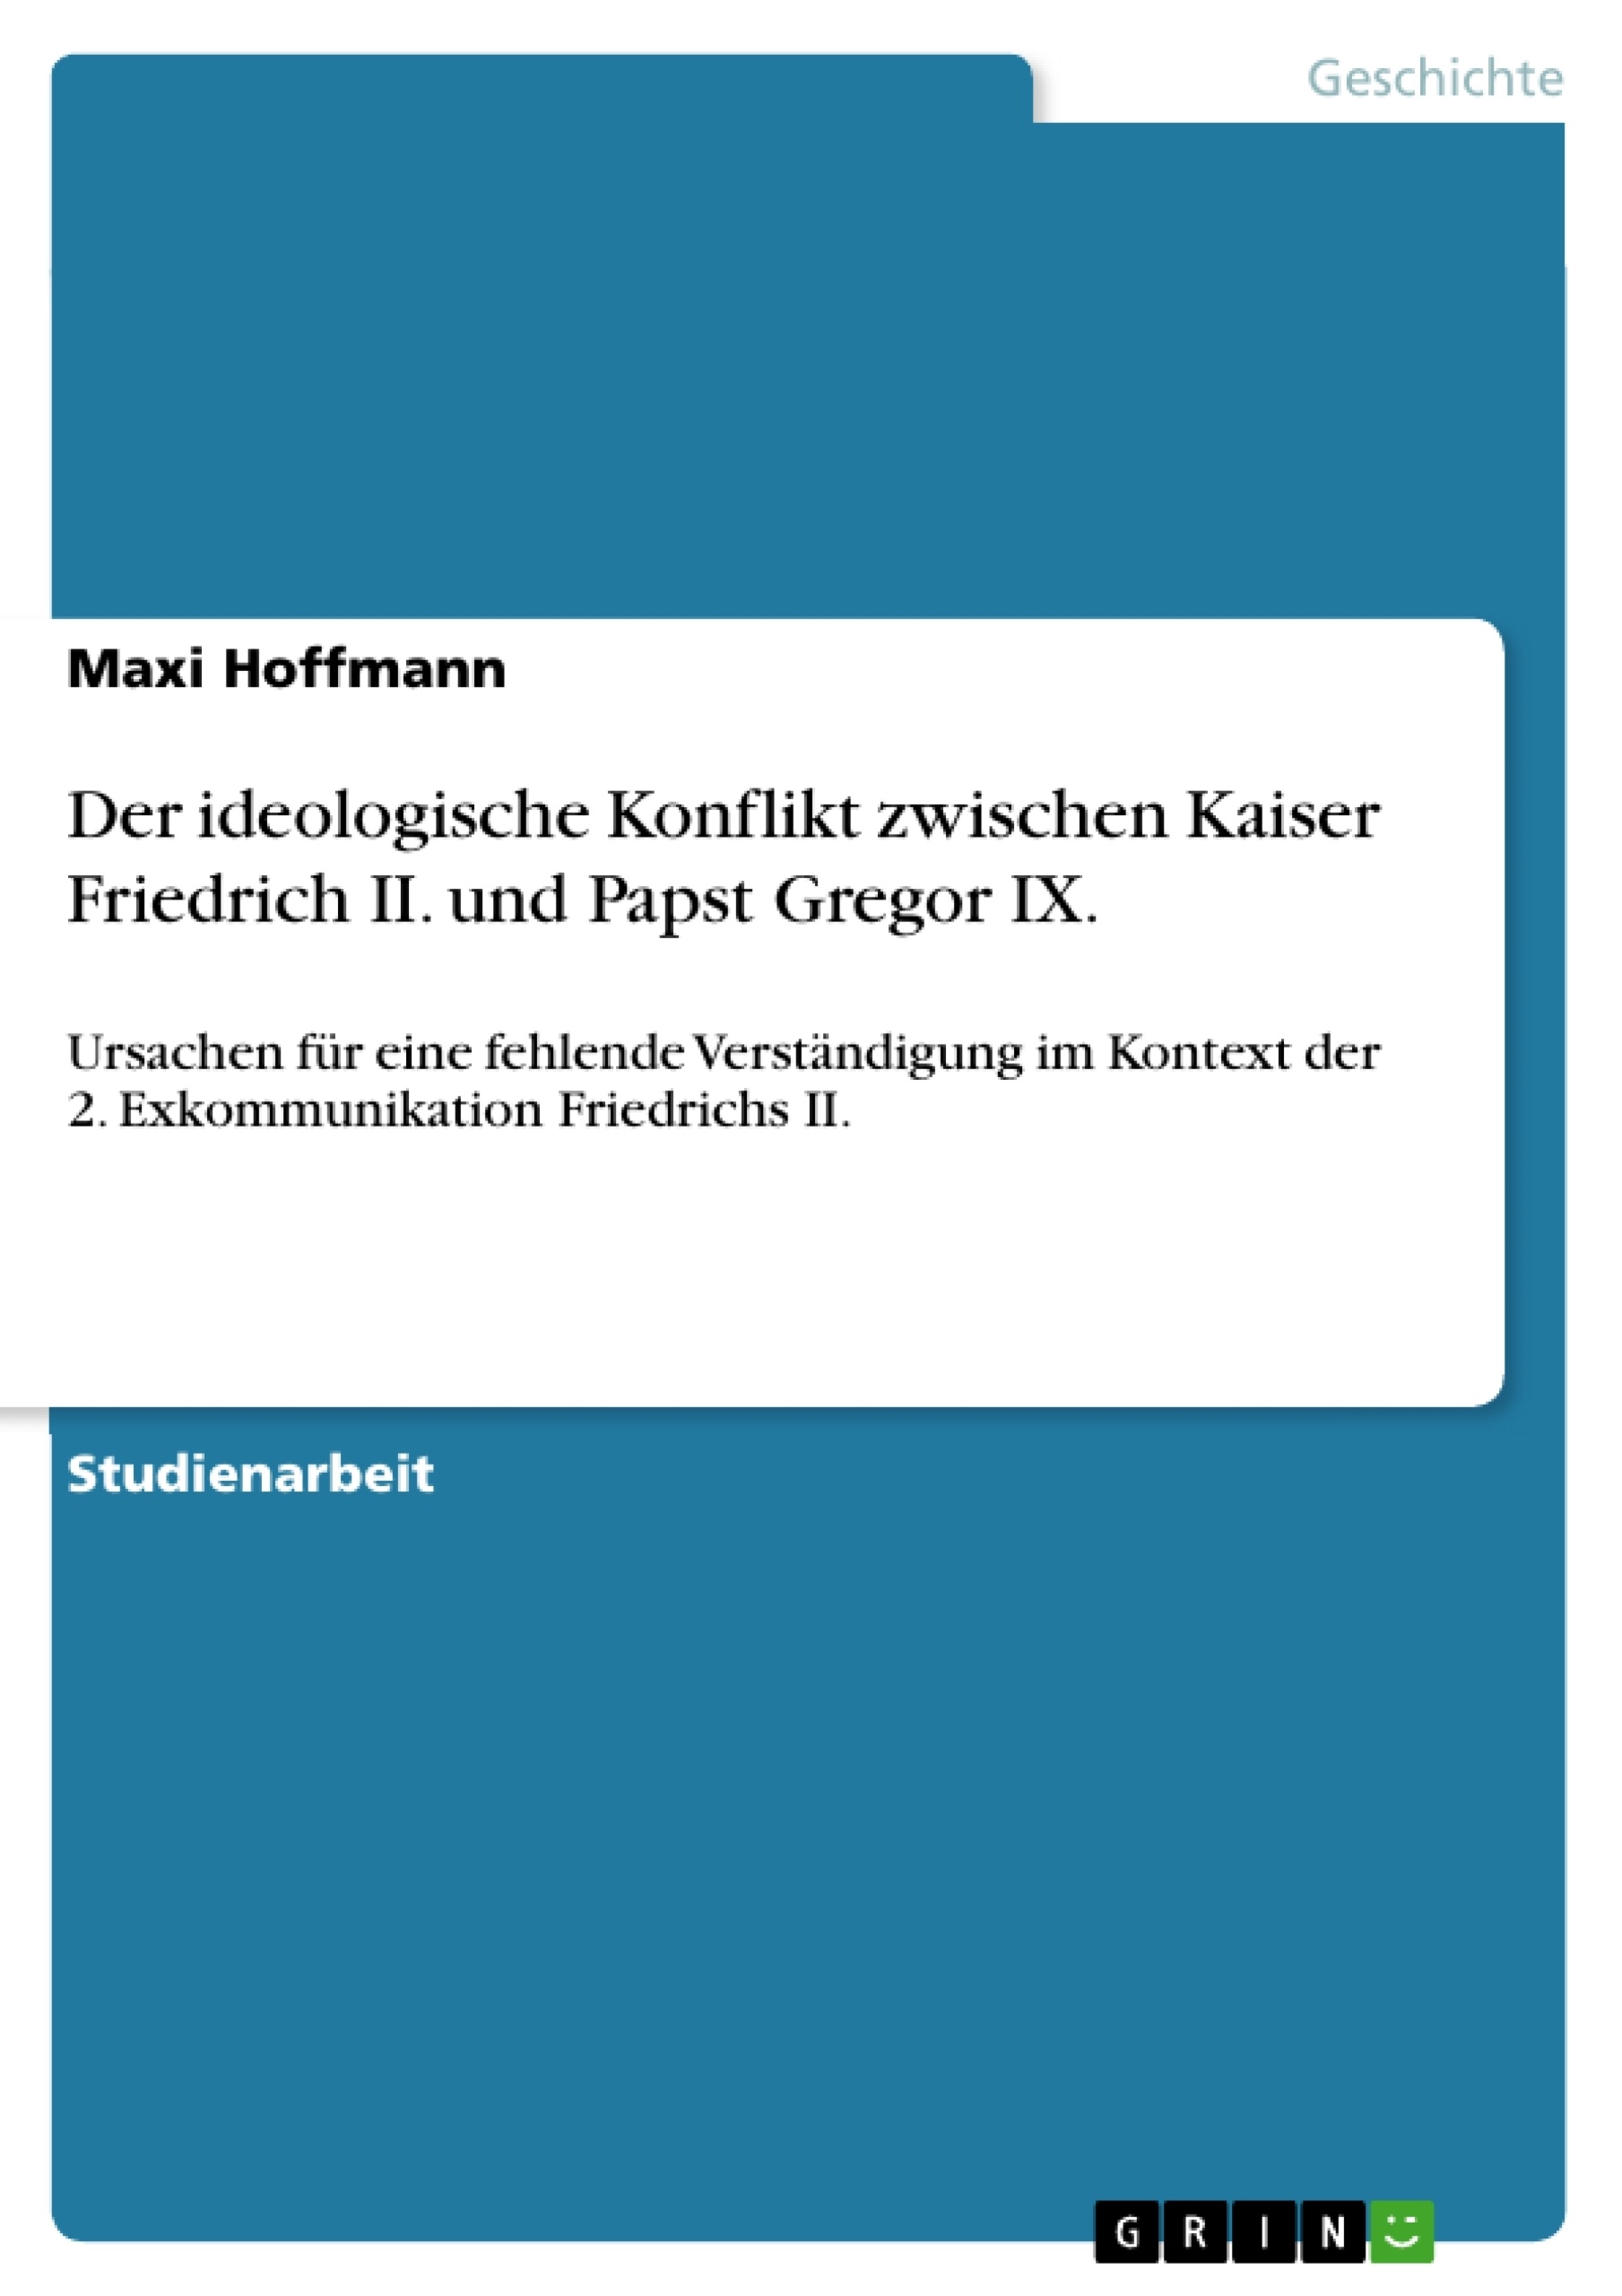 Título: Der ideologische Konflikt zwischen Kaiser Friedrich II. und Papst Gregor IX.